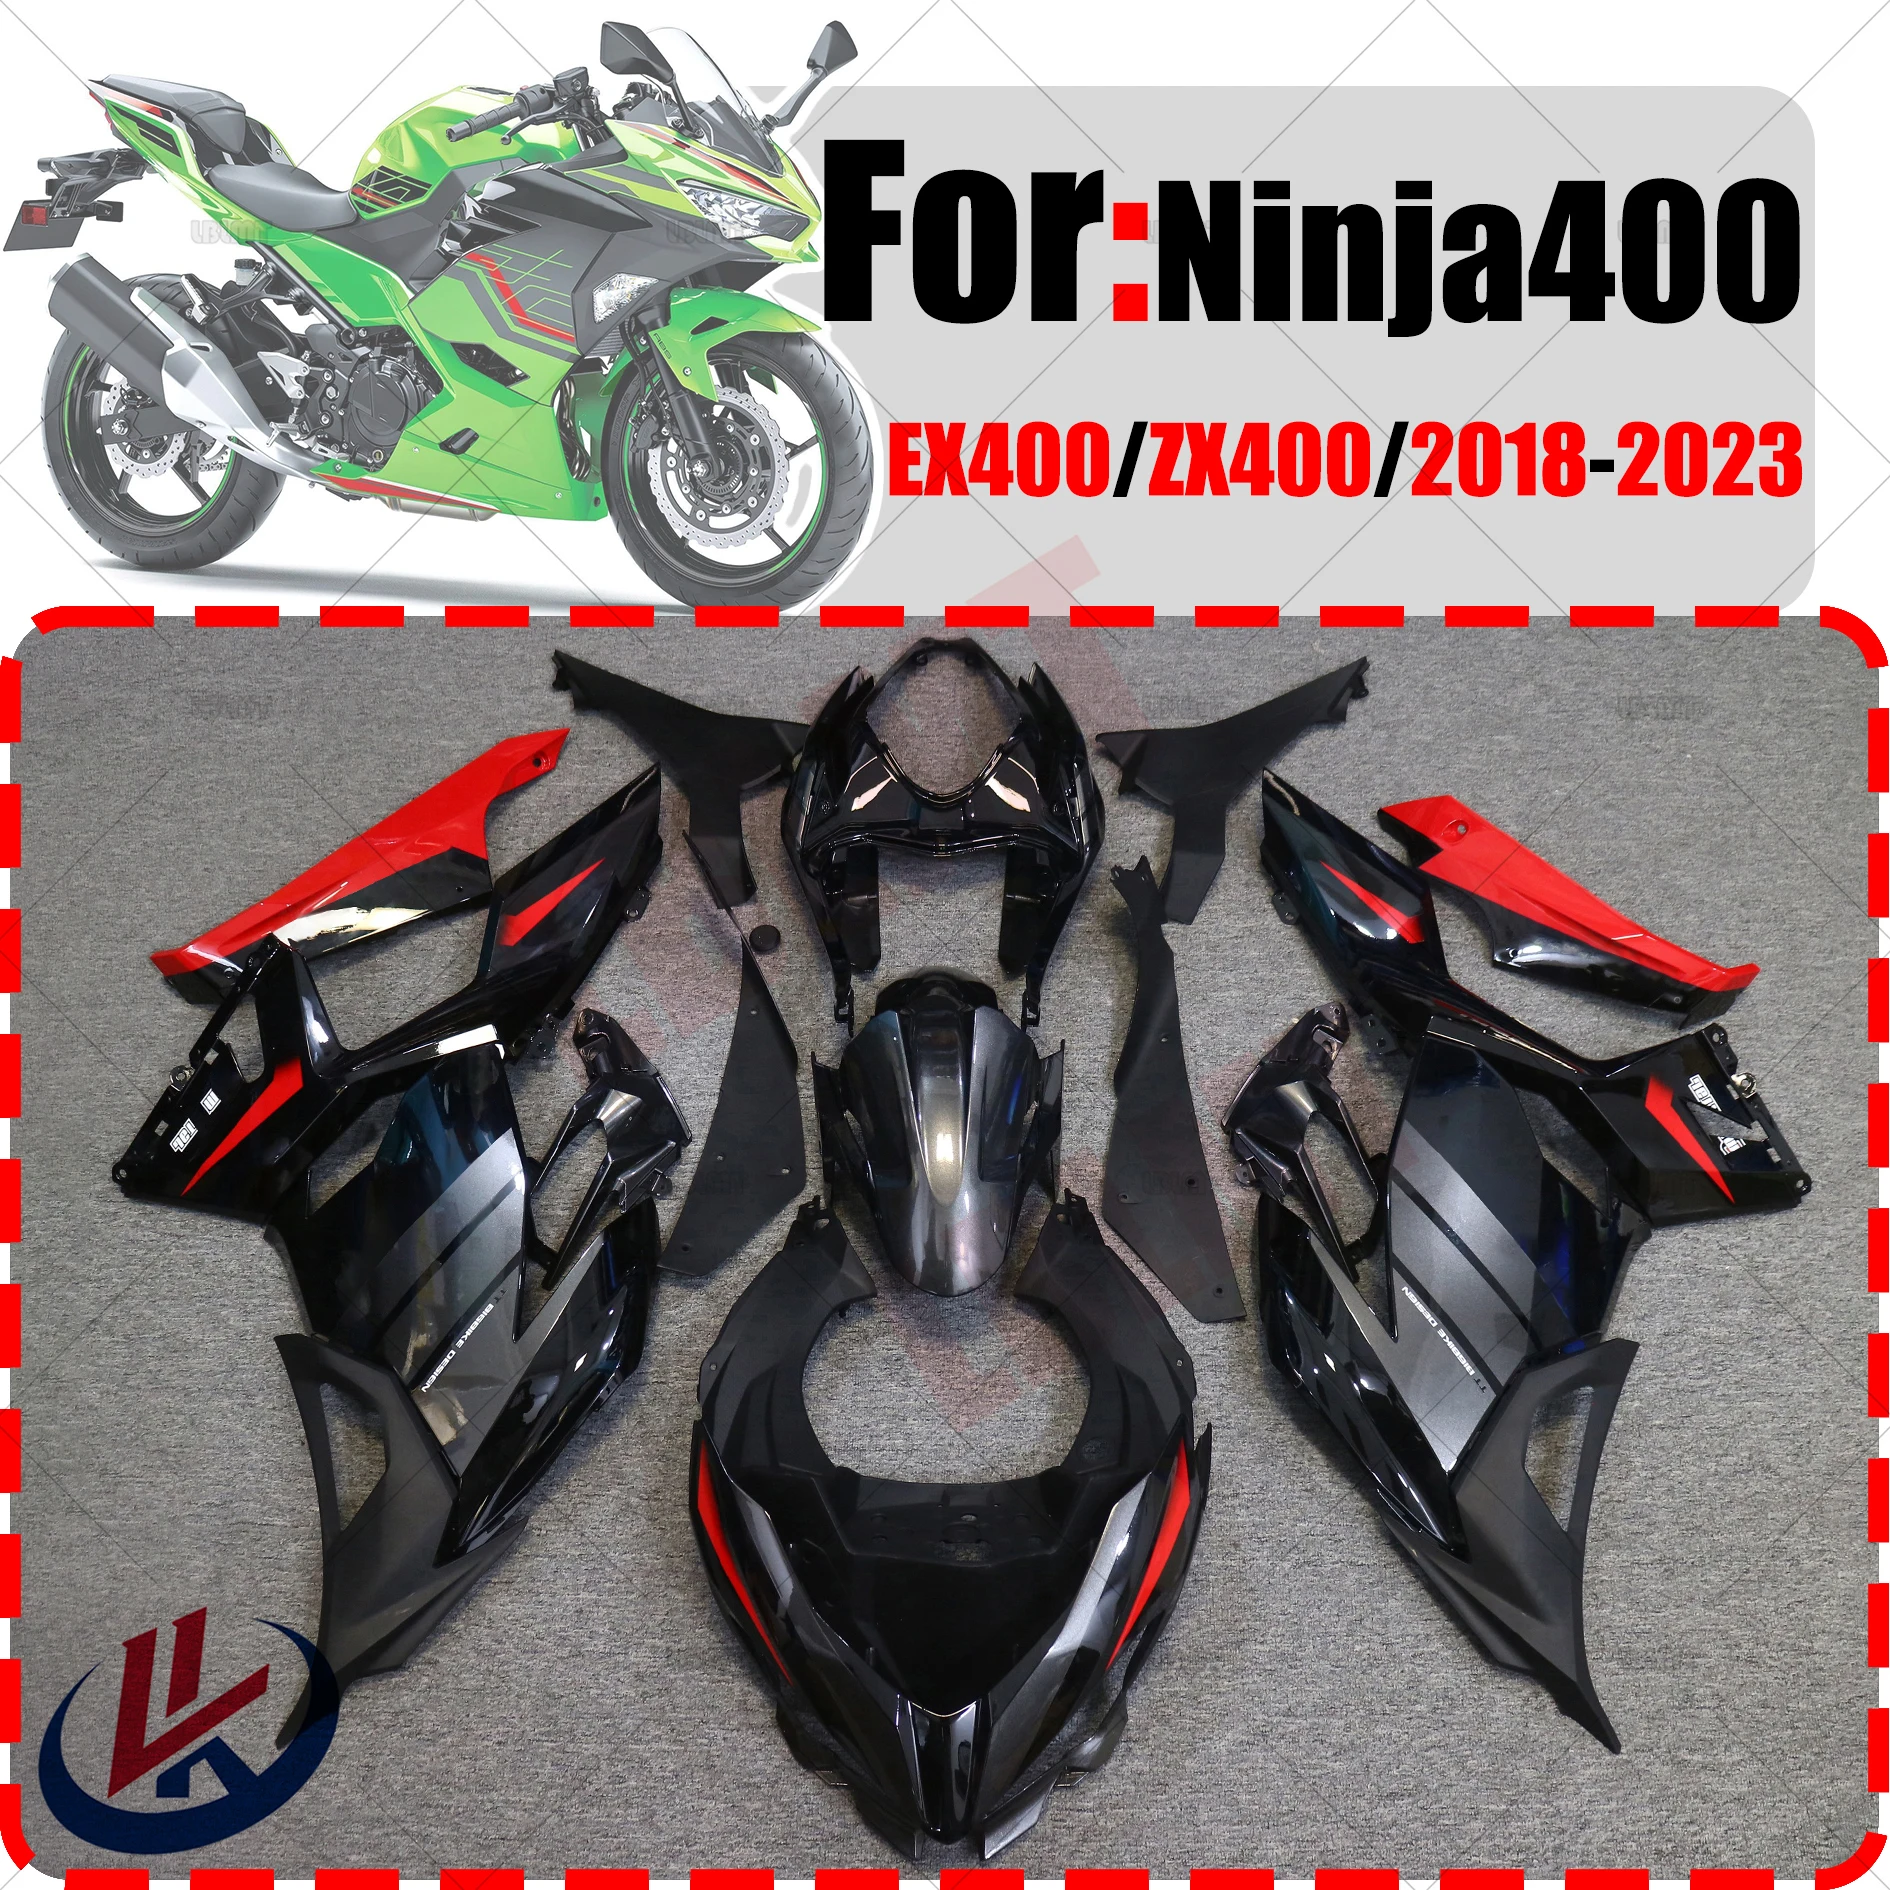 

Комплект обтекателей для мотоцикла, подходит для KAWASAKI NINJA 400 EX400 Ninja400 2018-2023, комплект кузова из высококачественного АБС-пластика, полный обтекатель